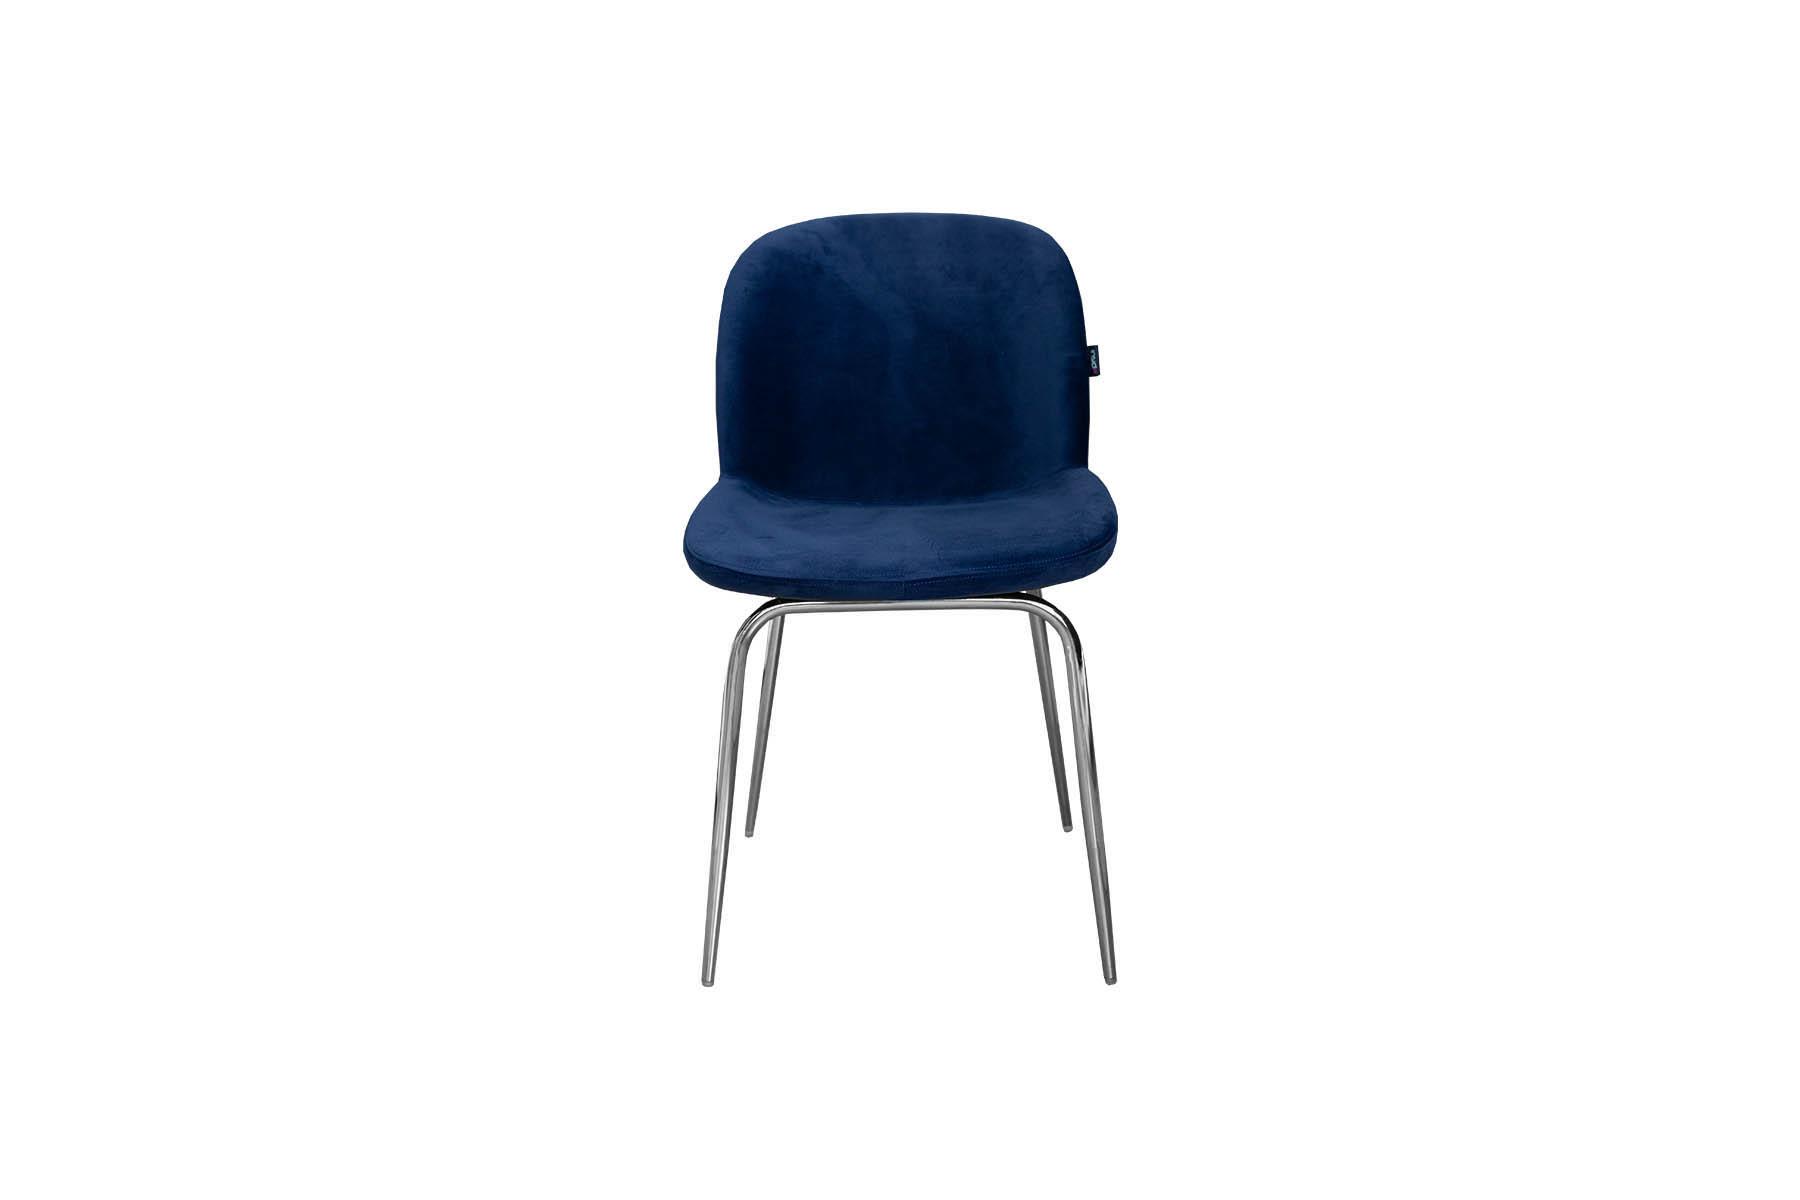 Trpezarijska stolica Iv svojim zaobljenim oblikom sjedišta lako će uklopiti meke elegantne linije u moderni prostor. Kombinirajte je sa okruglim stolovima za upotpunjen dojam blažeg dizajna, ili zaigrajte stilsku igru kombinirajući je sa kontrastnim pravougaonim trpezarijskim stolovima.